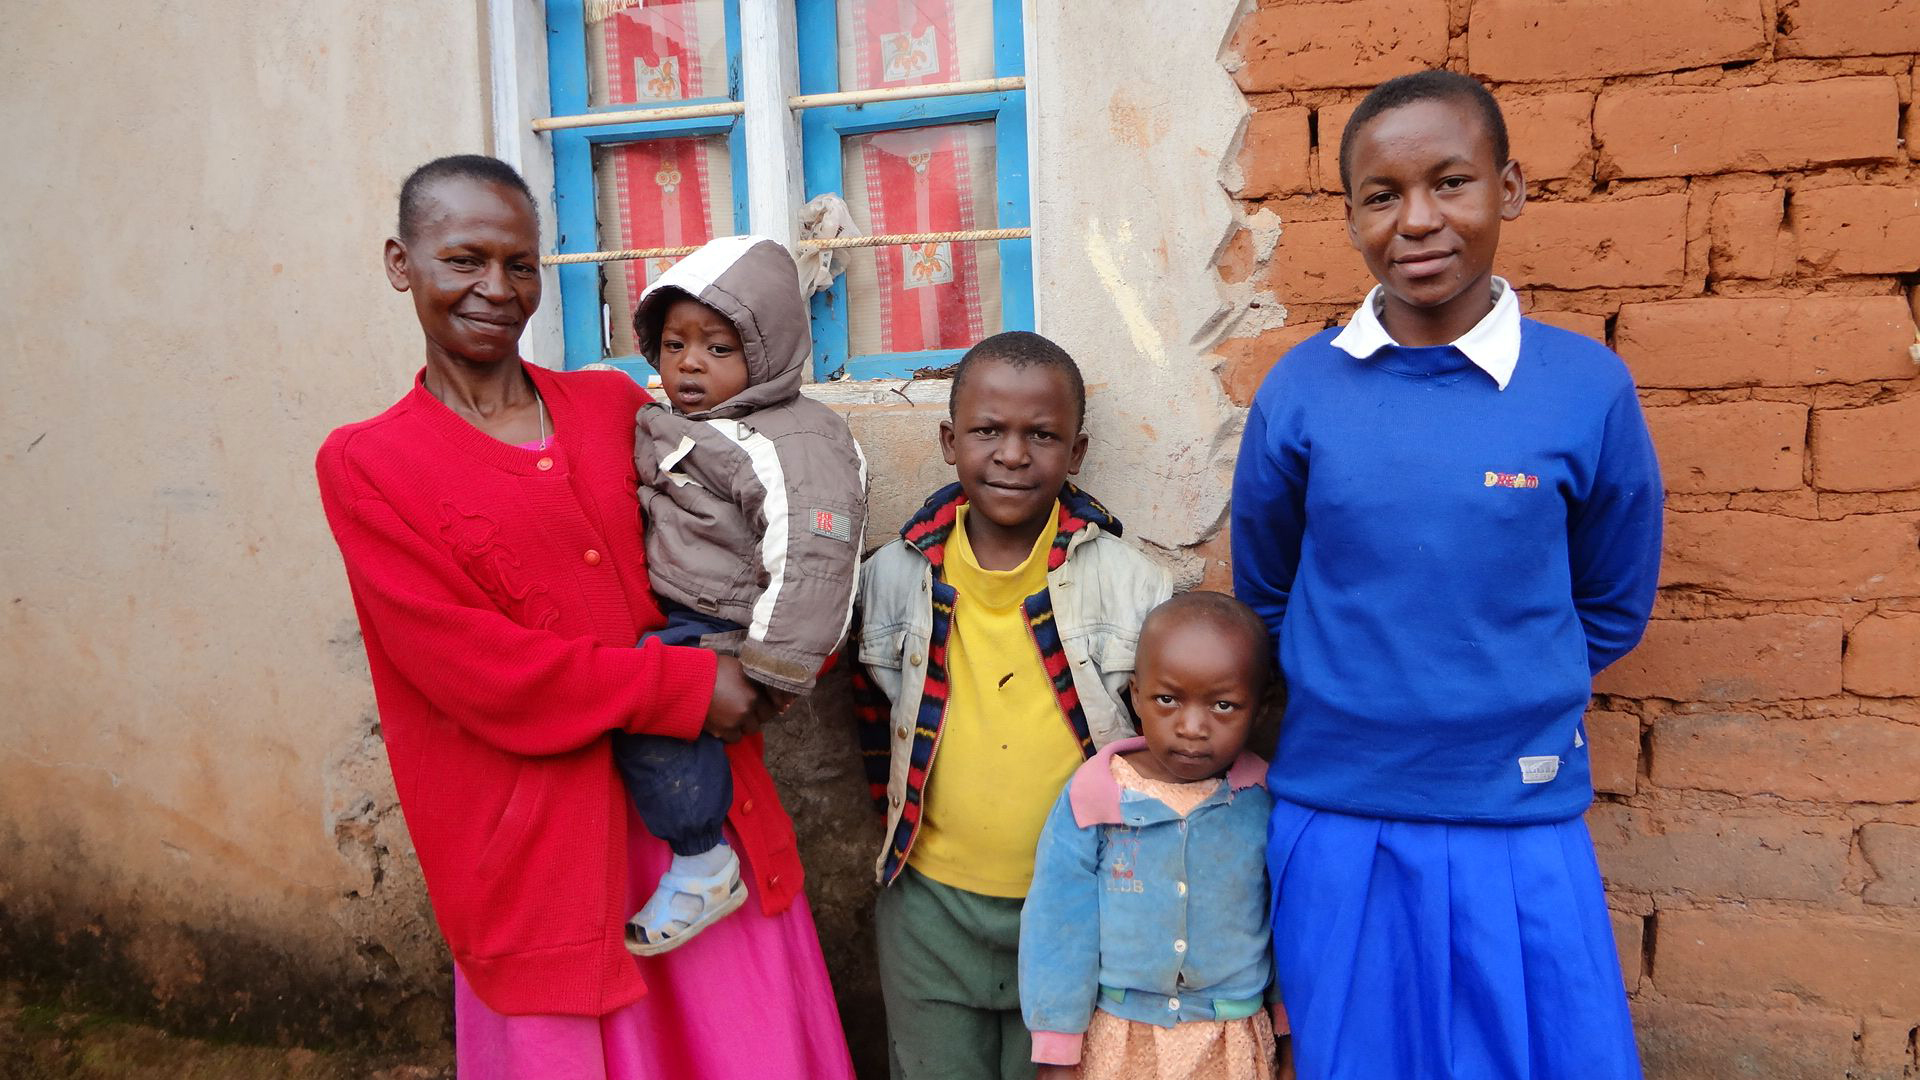 Sofia (längst till höger) från Tanzania är lycklig. Trots sitt funktionshinder kan hon gå i skola. De flesta funktionshindrade i u-länderna har inte samma möjlighet. Foto: Elina Tikkanen